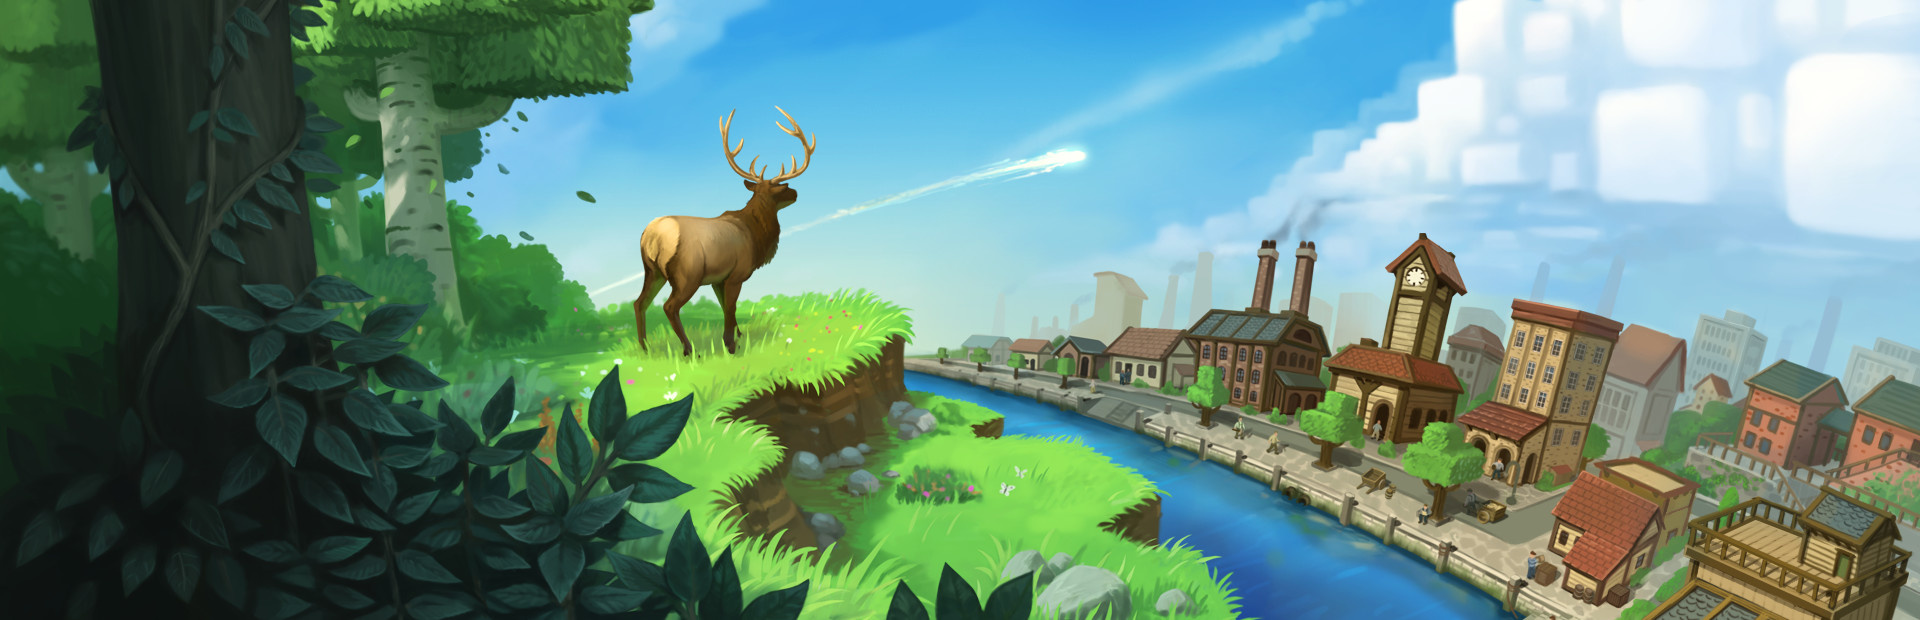 Screenshot des Computerspiels "ECO"; Ein Hirsch schaut auf eine Stadt, die bald von einem Meteorit getroffen wird.